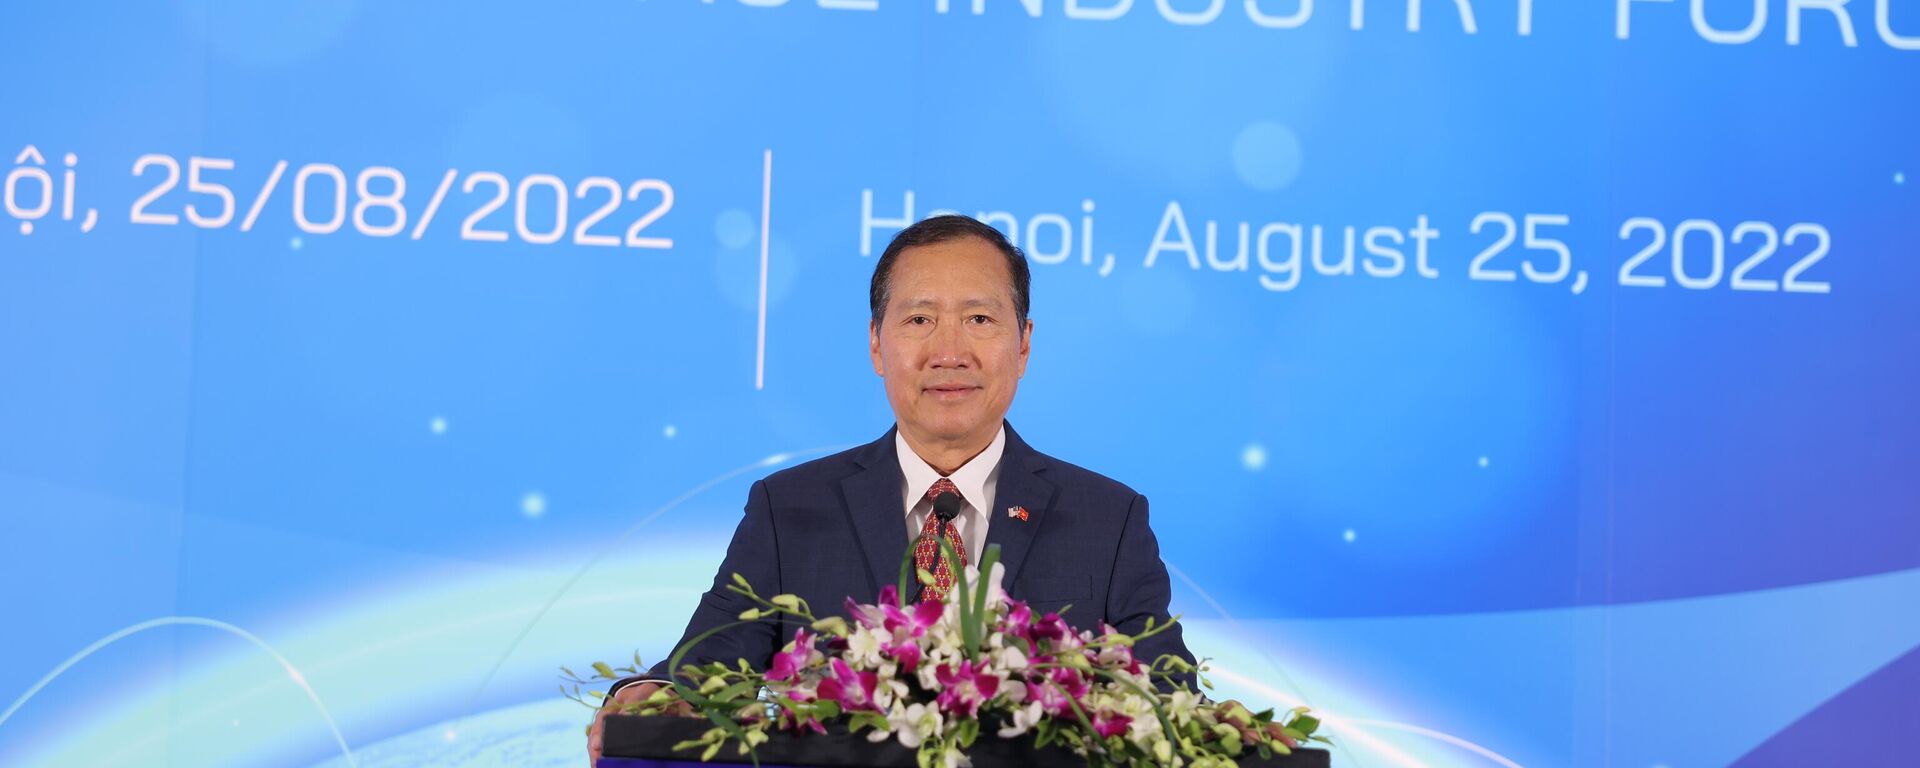 Giám đốc Boeing Việt Nam Michael Nguyễn phát biểu tại Diễn đàn Hàng không Vũ trụ Boeing tại Hà Nội - Sputnik Việt Nam, 1920, 25.08.2022